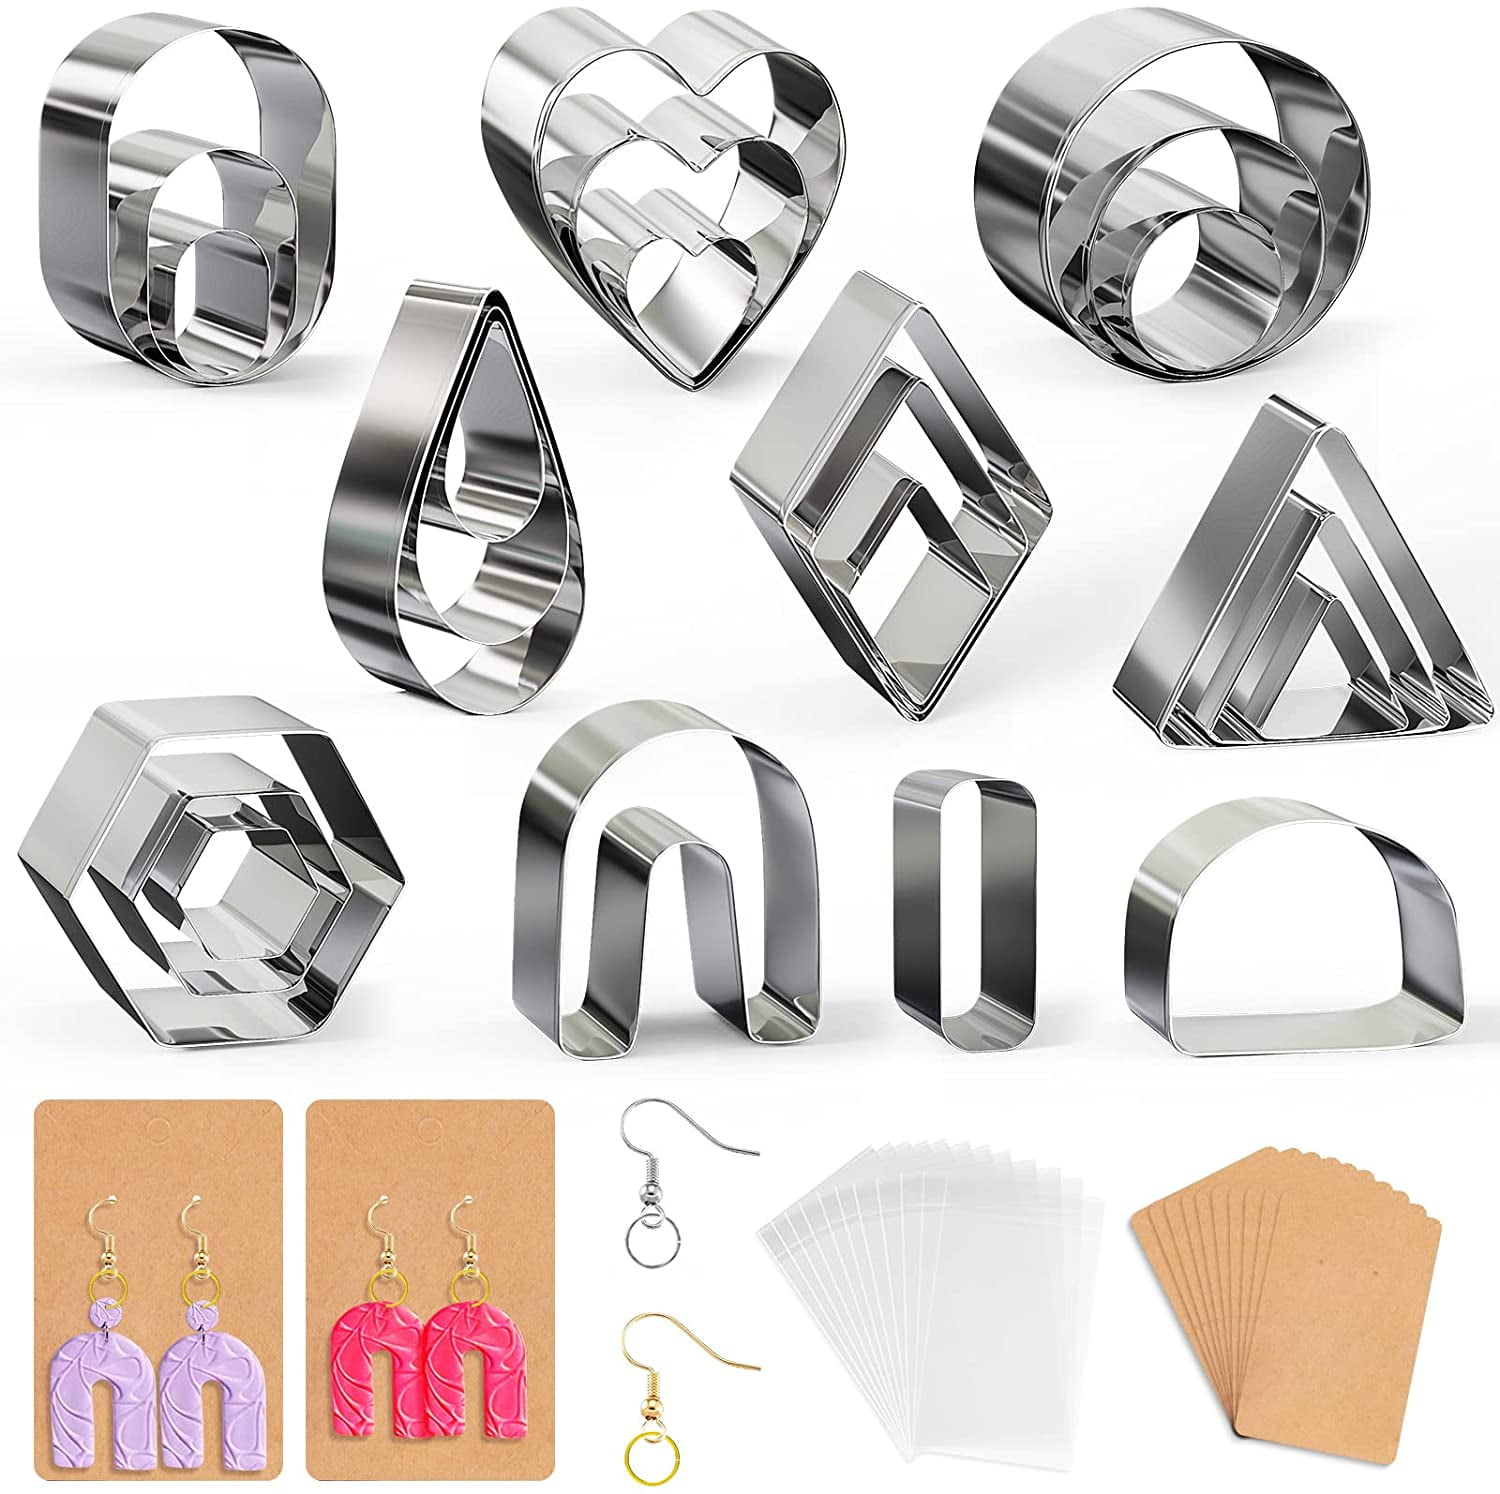 24PCS/142PCS Polymer Clay Cutters Tools Plastic Clay Earring Cutters with  Earring Cards for Polymer Clay Jewelry Making - AliExpress